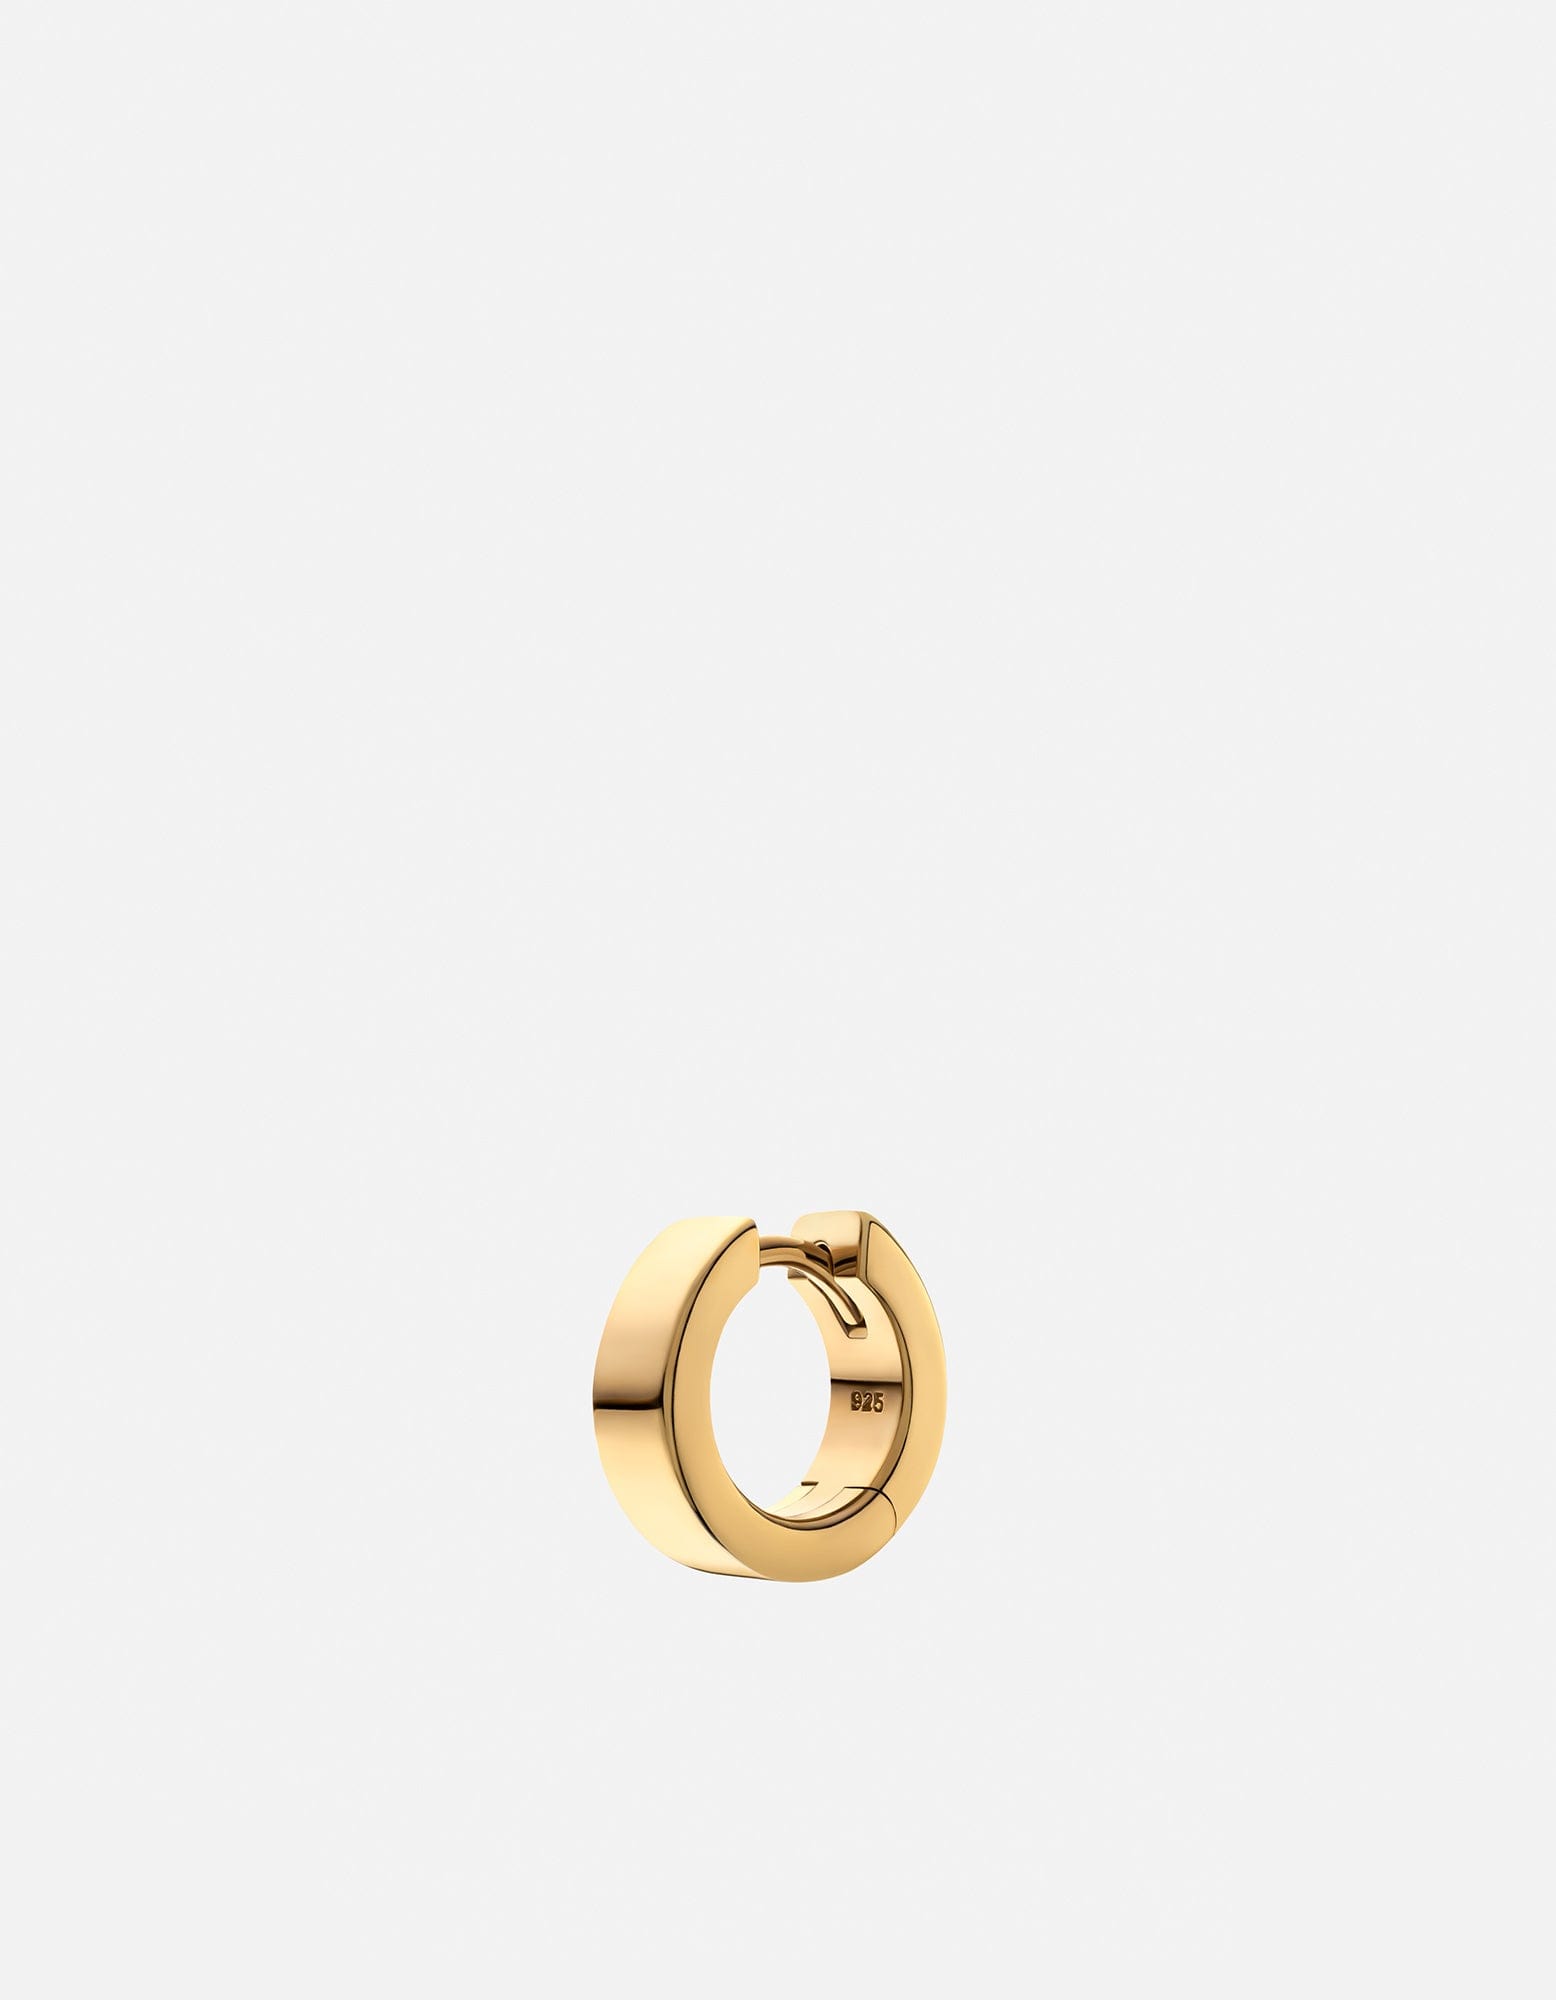 Buy Best Earrings For Men | Gold & Diamond Men's Earrings